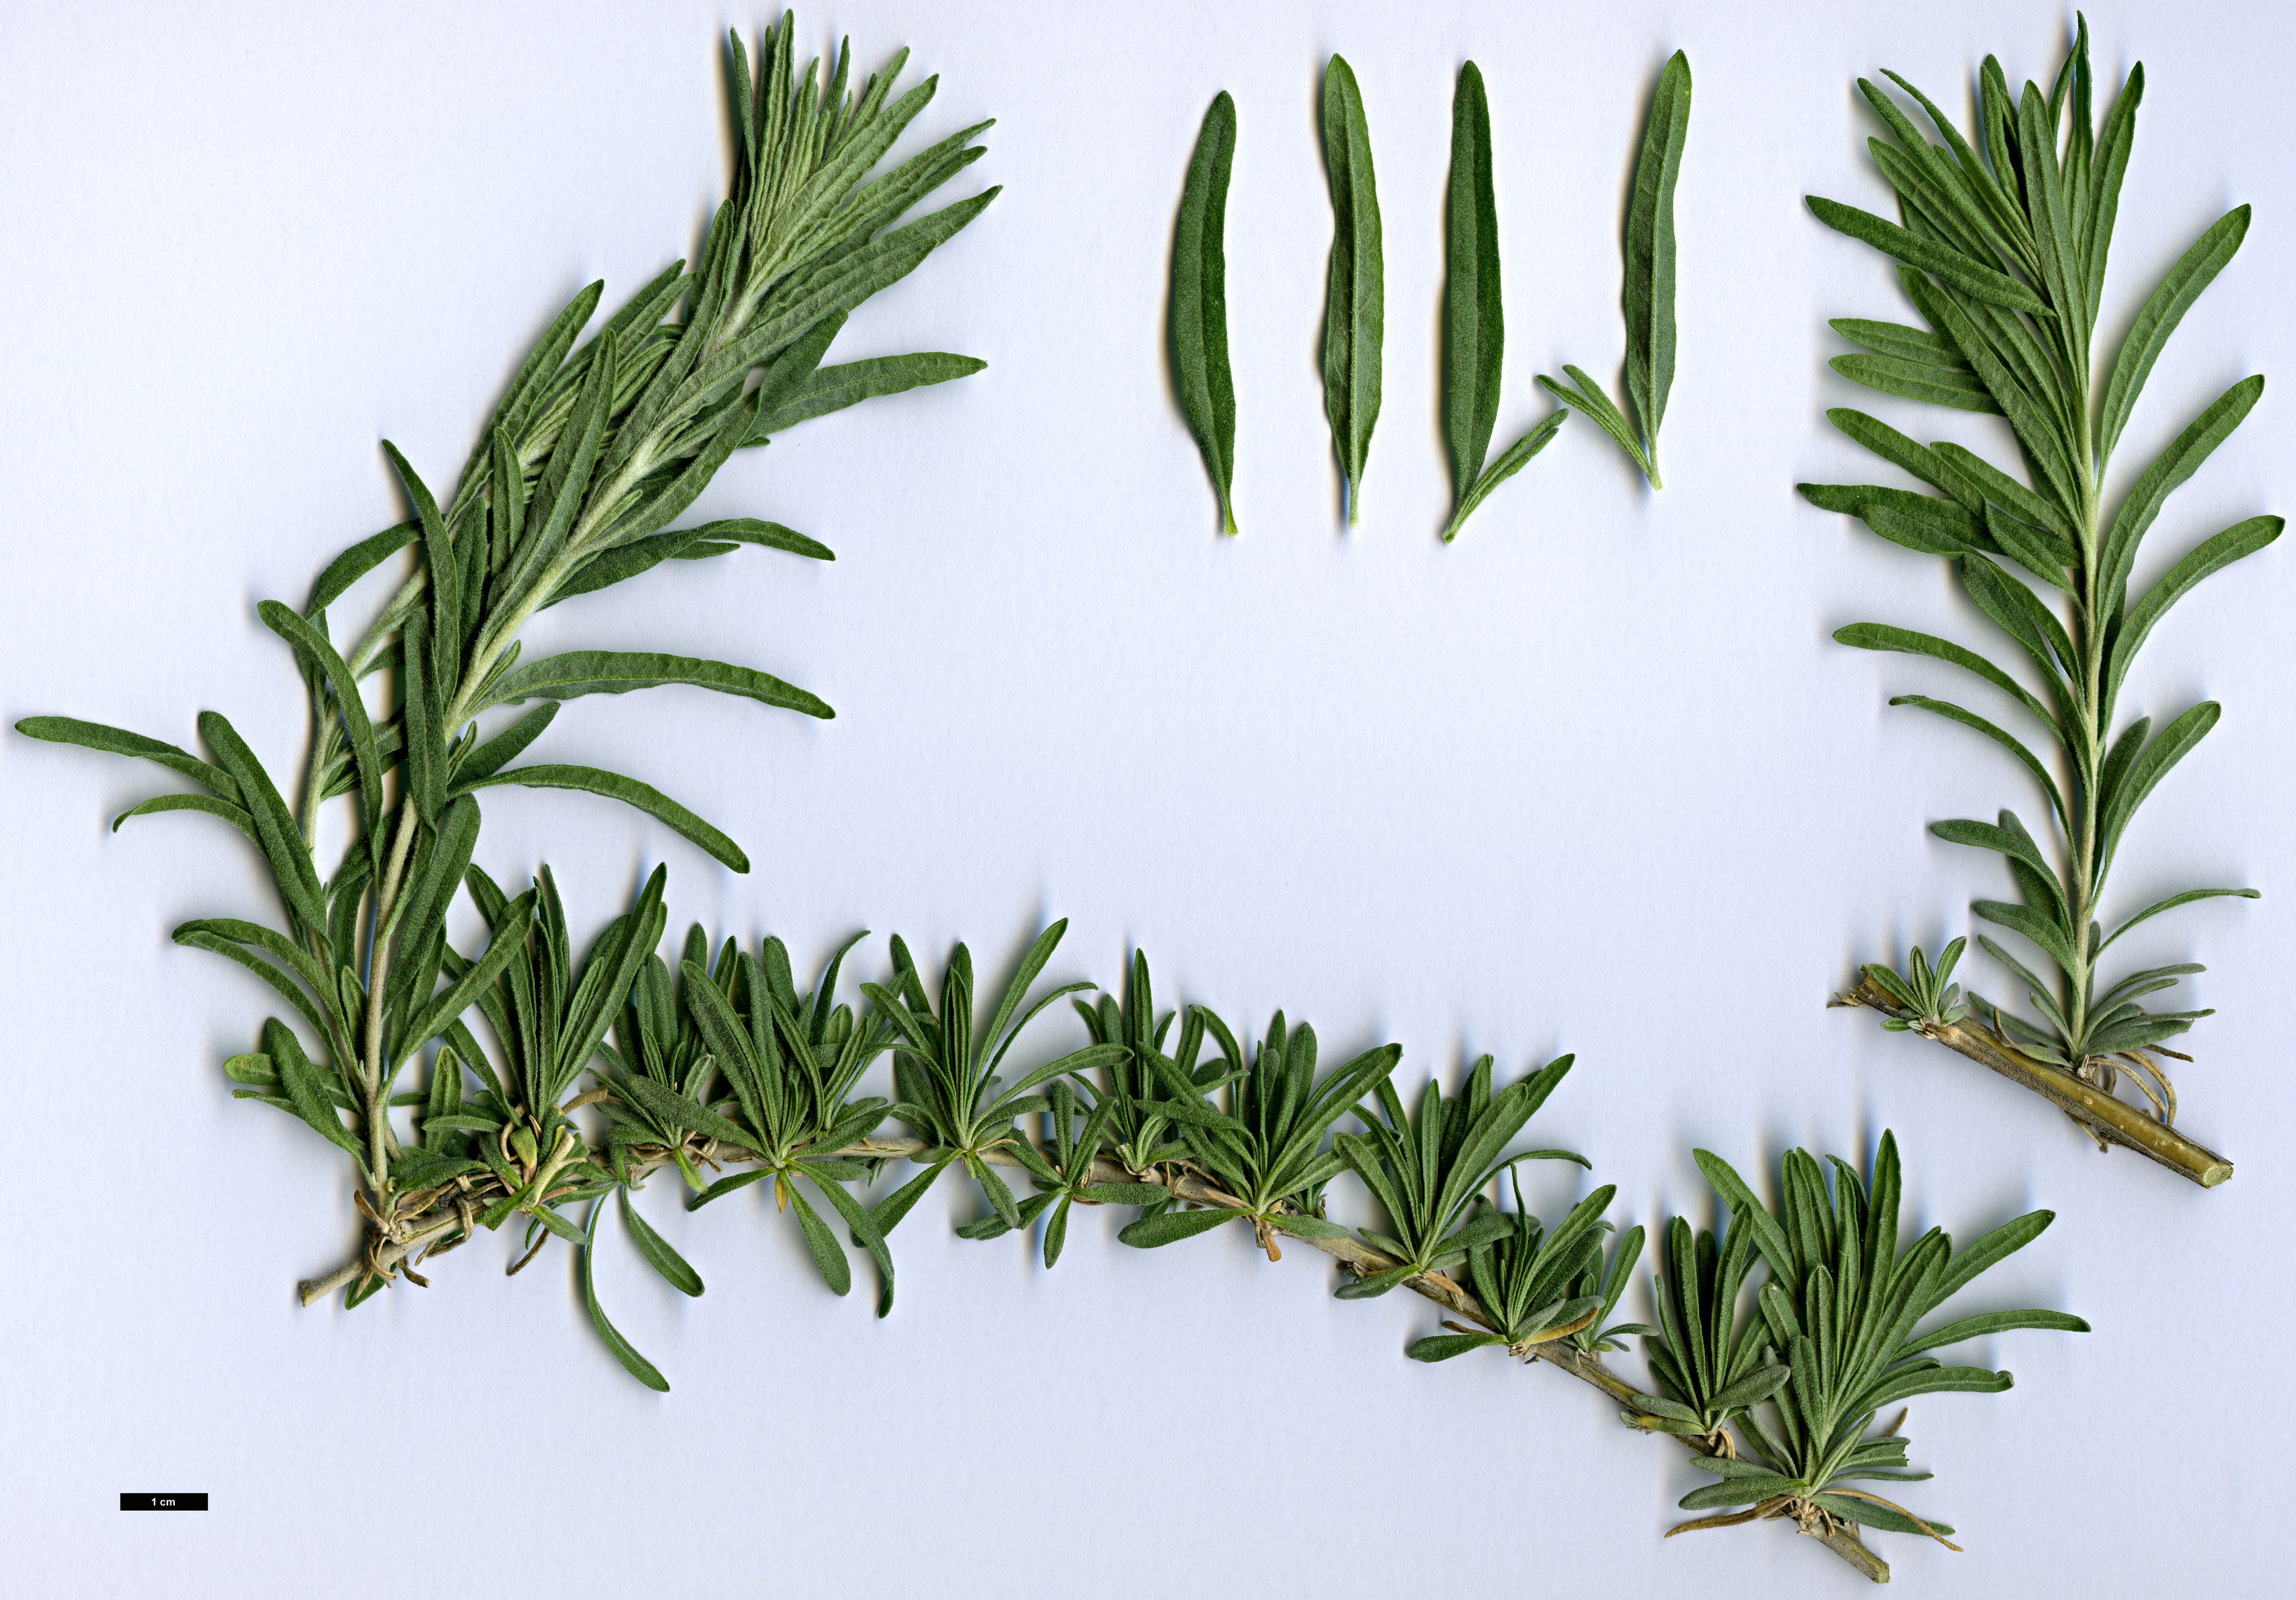 High resolution image: Family: Amaranthaceae - Genus: Krascheninnikovia - Taxon: ceratoides - SpeciesSub: subsp. lanata